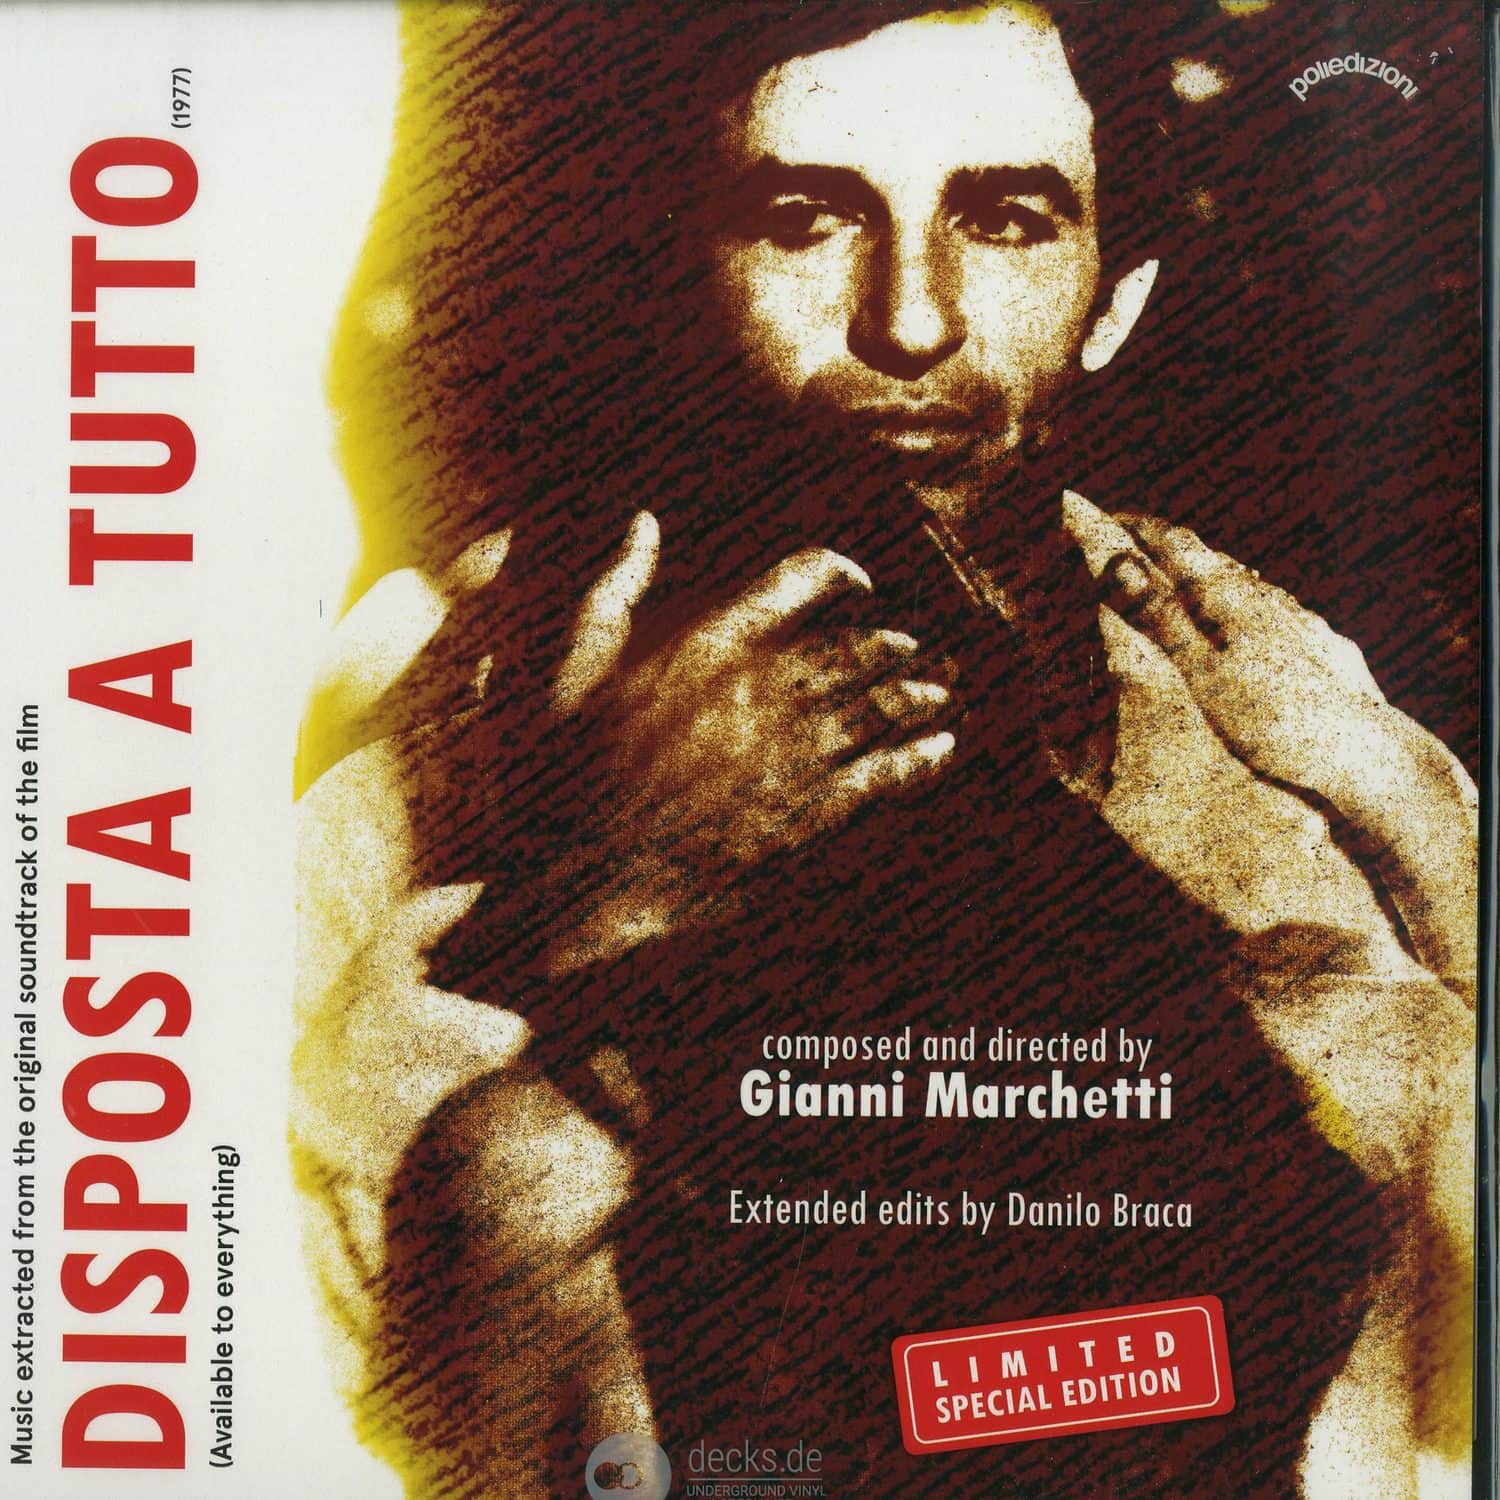 Gianni Marchetti - DISPOSTA A TUTTO